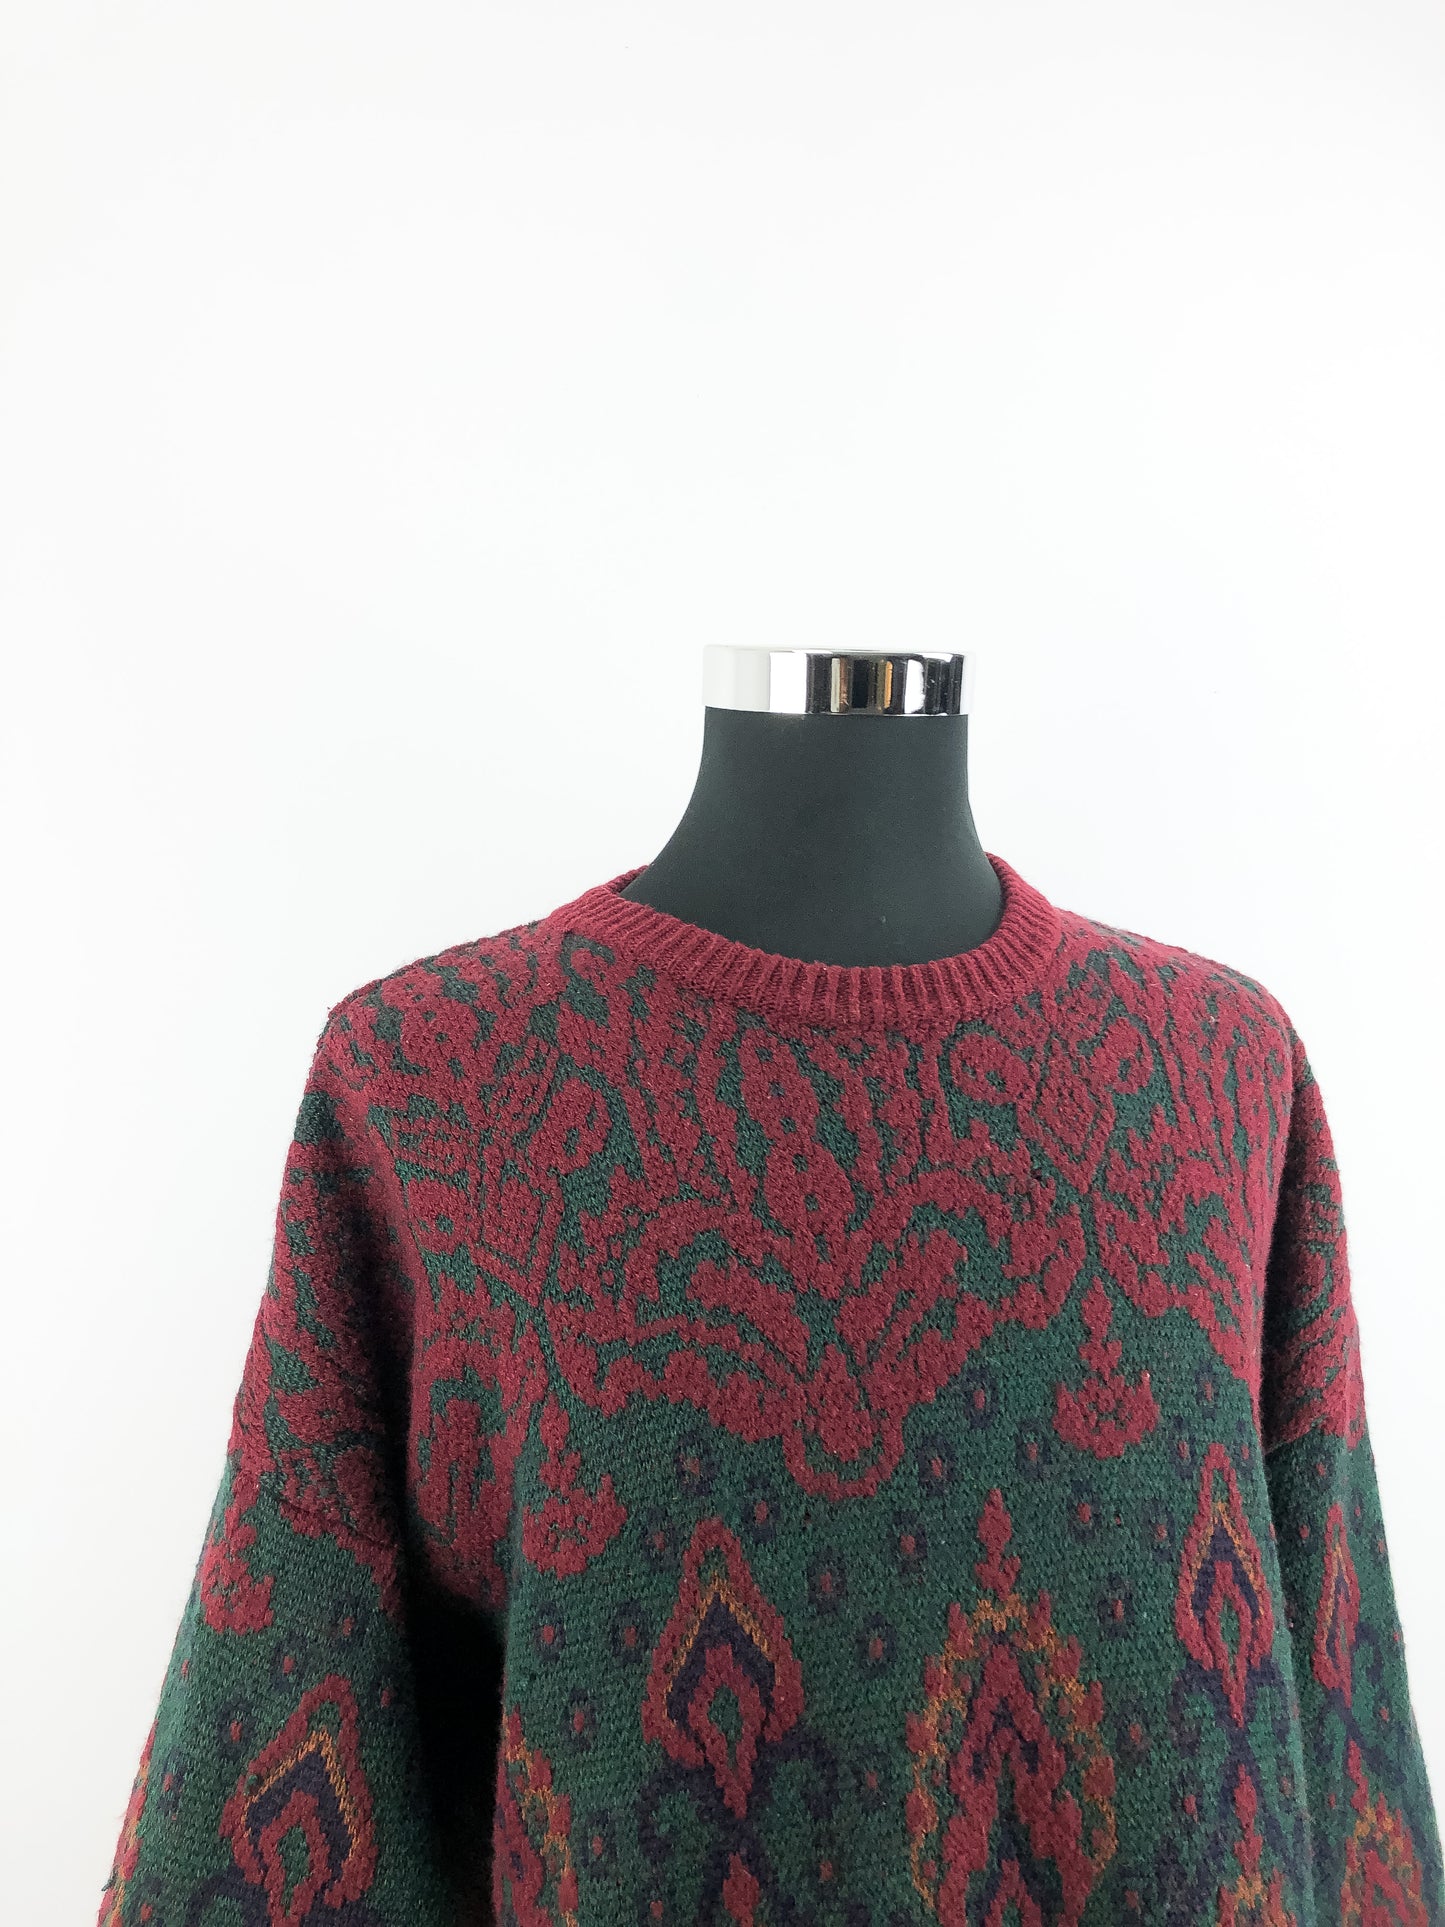 Yves Saint Laurent Vintage Knit